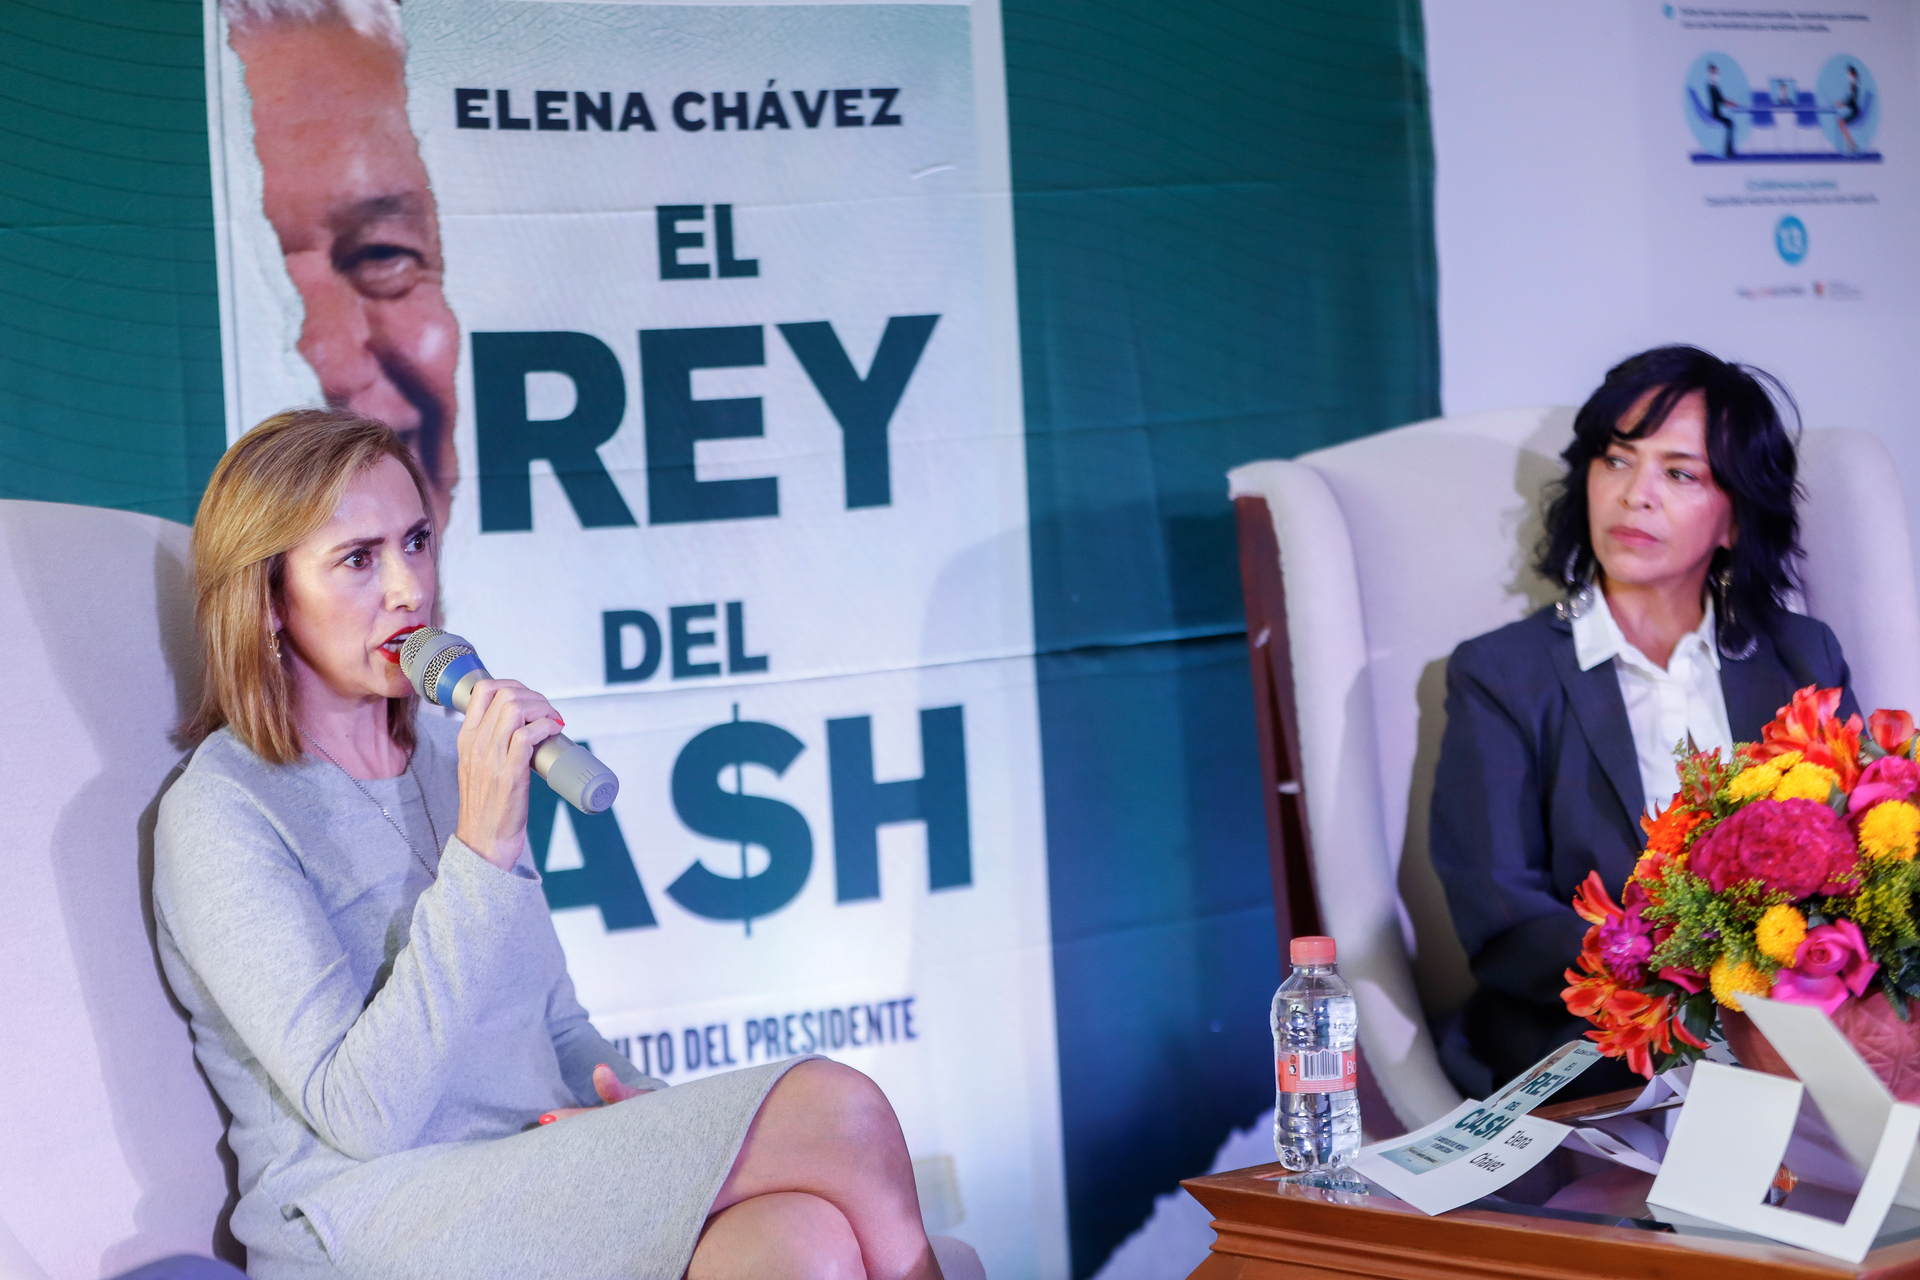 Denuncia Anabel Hernández censura a presentaciones de El rey del Cash